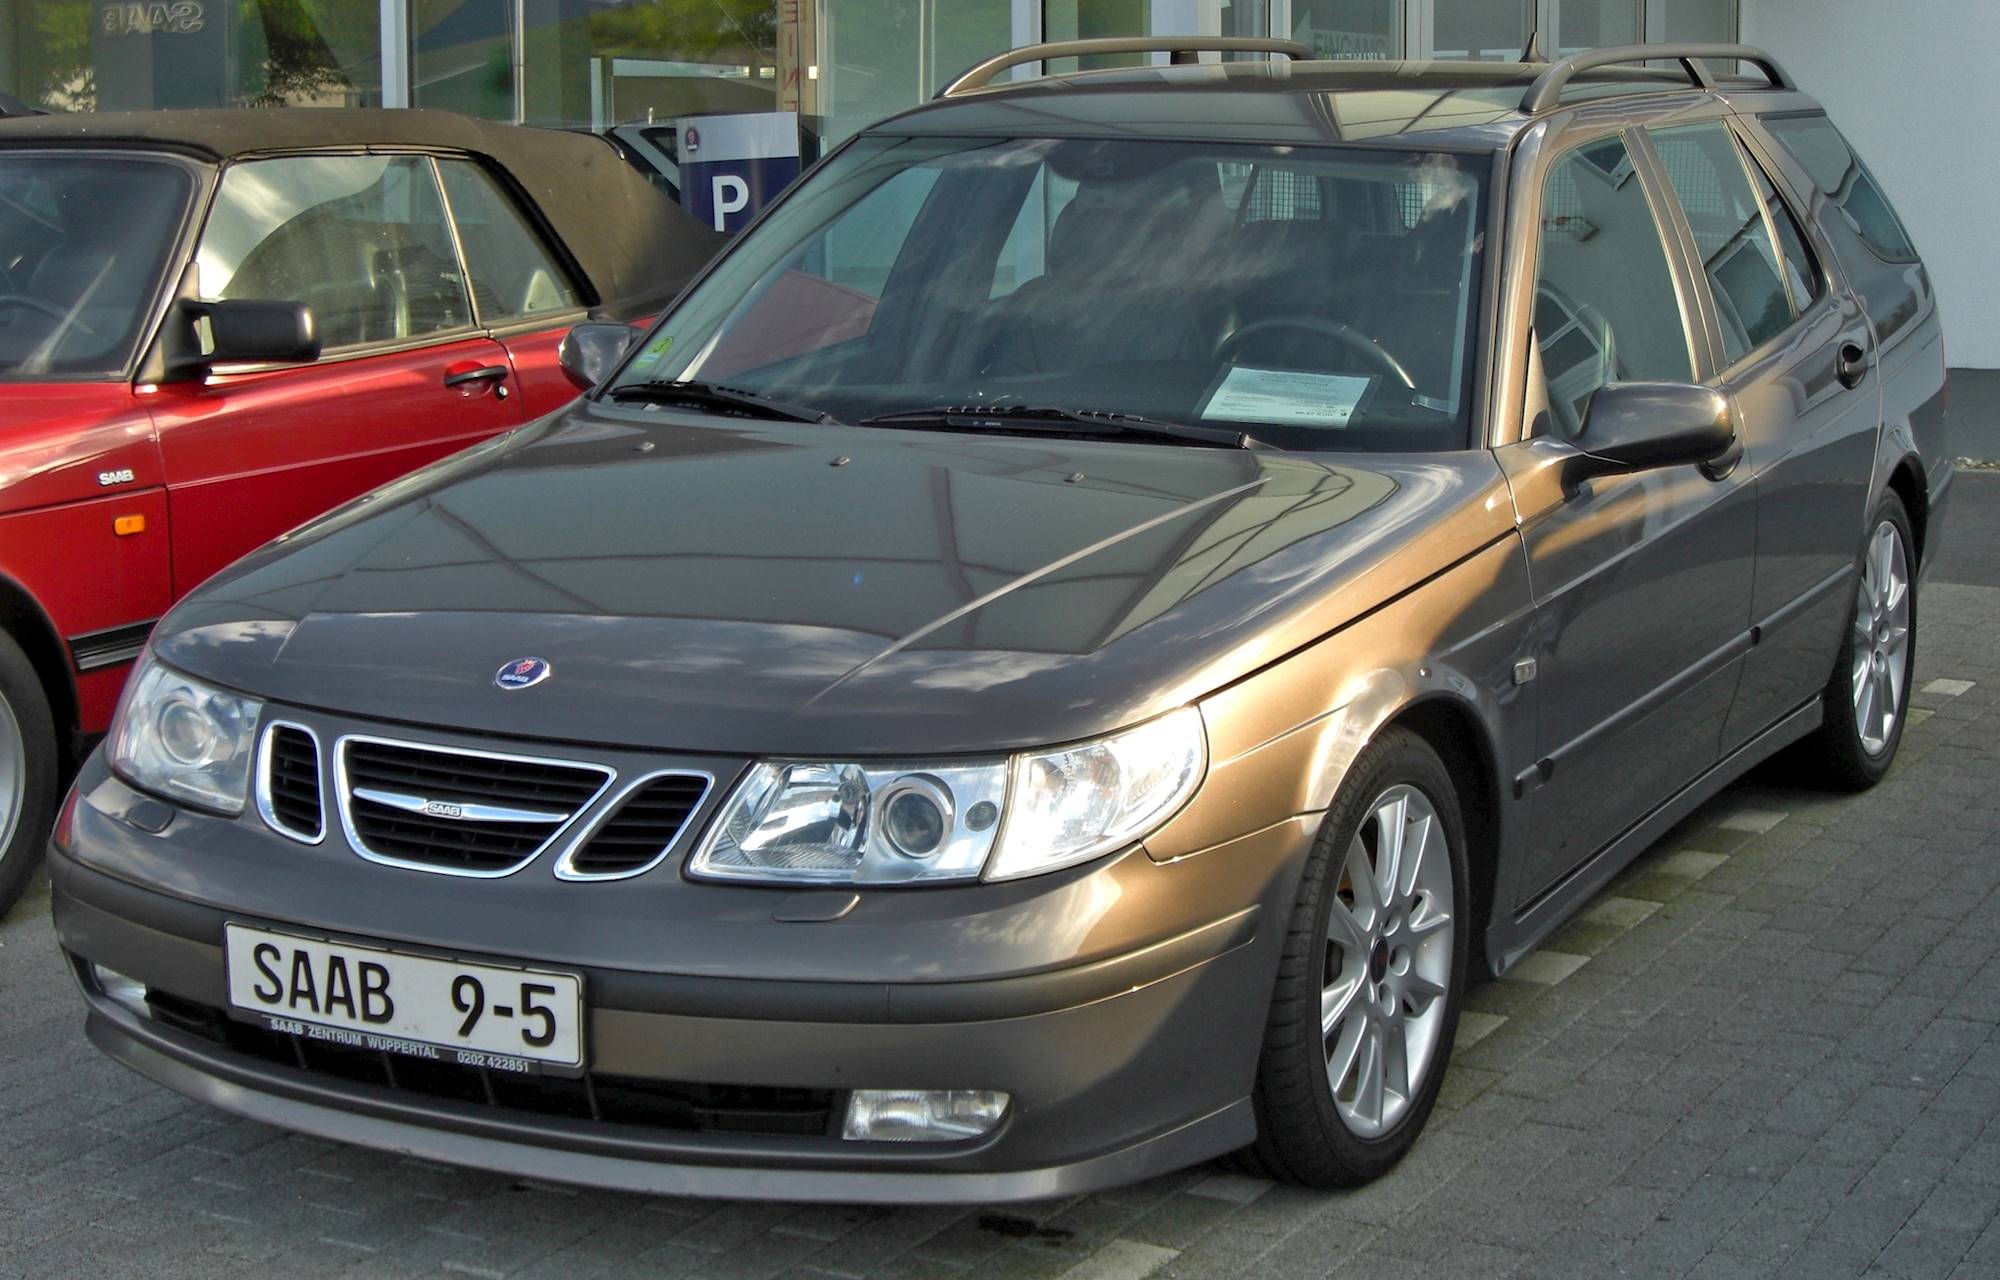 2005 Saab 9-5 Linear 2.3T - Wagon 2.3L Turbo Manual